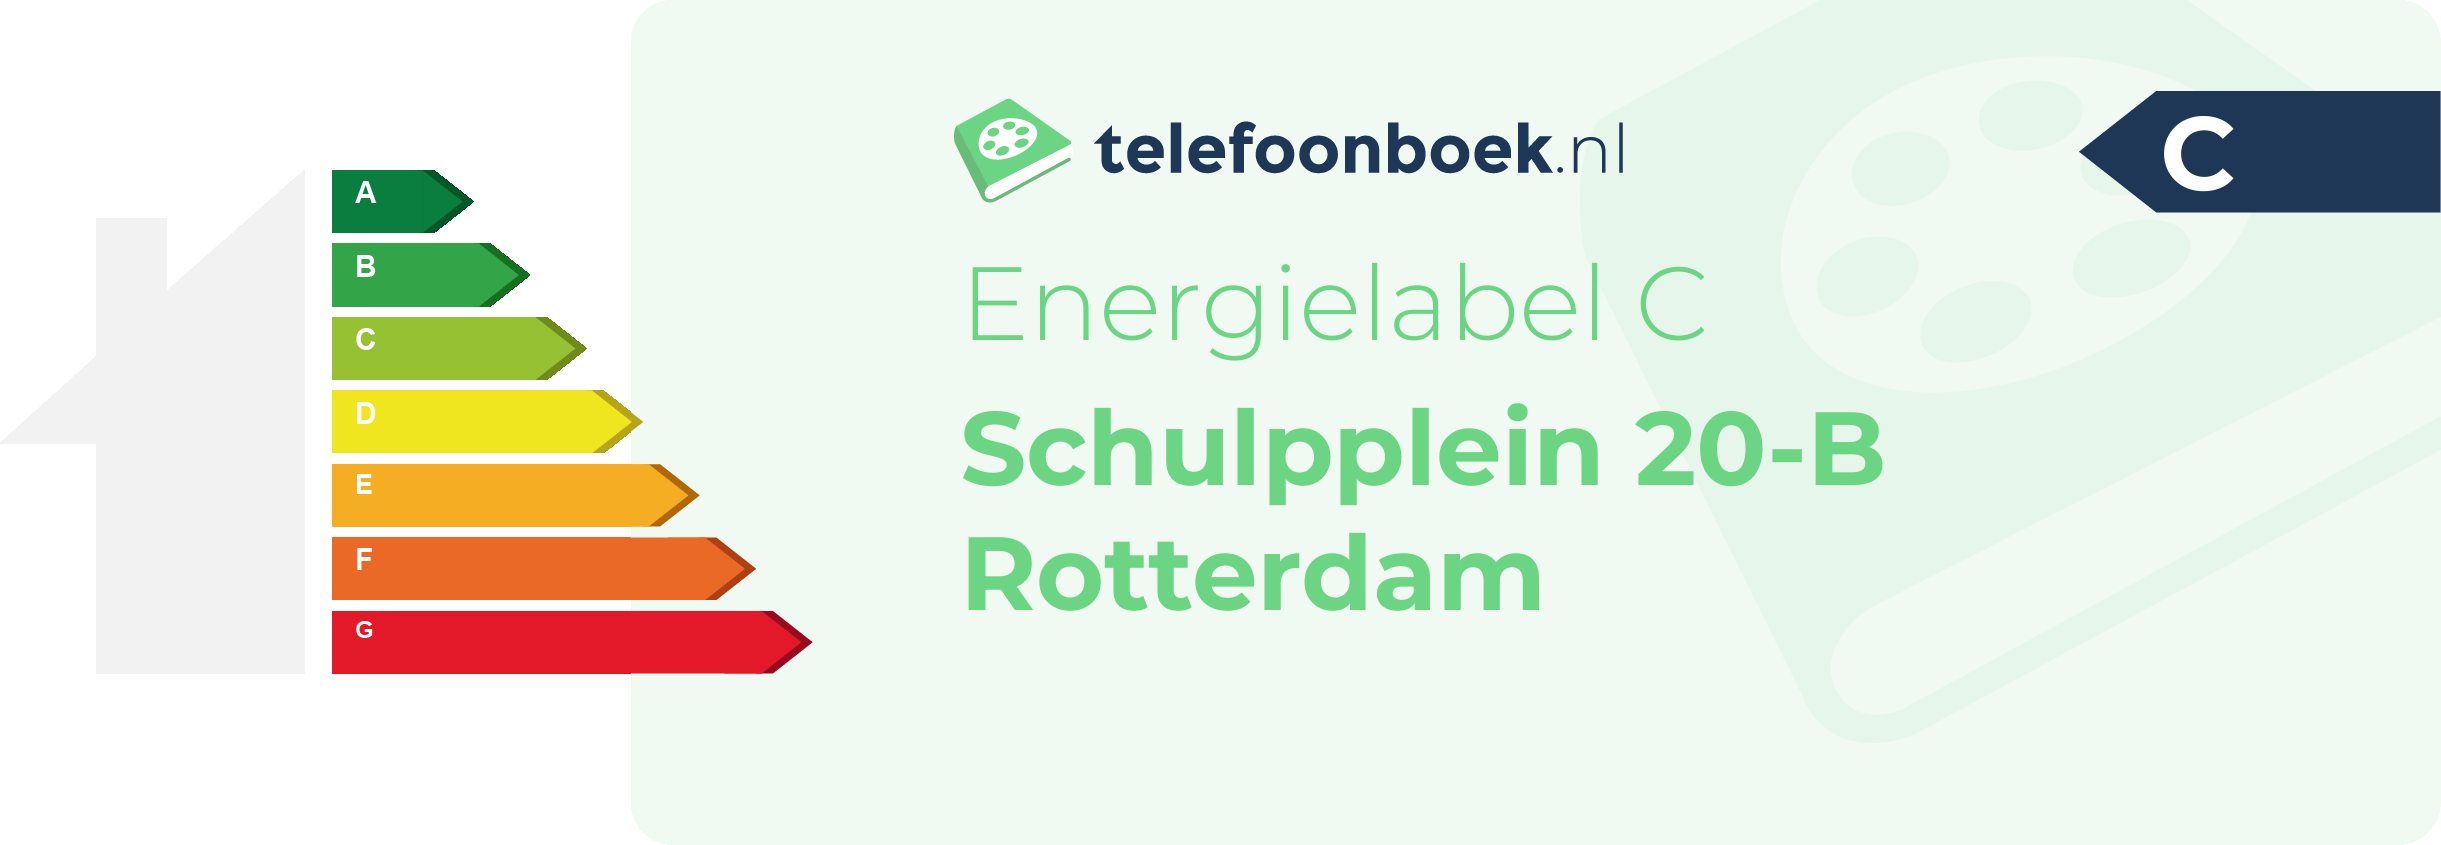 Energielabel Schulpplein 20-B Rotterdam